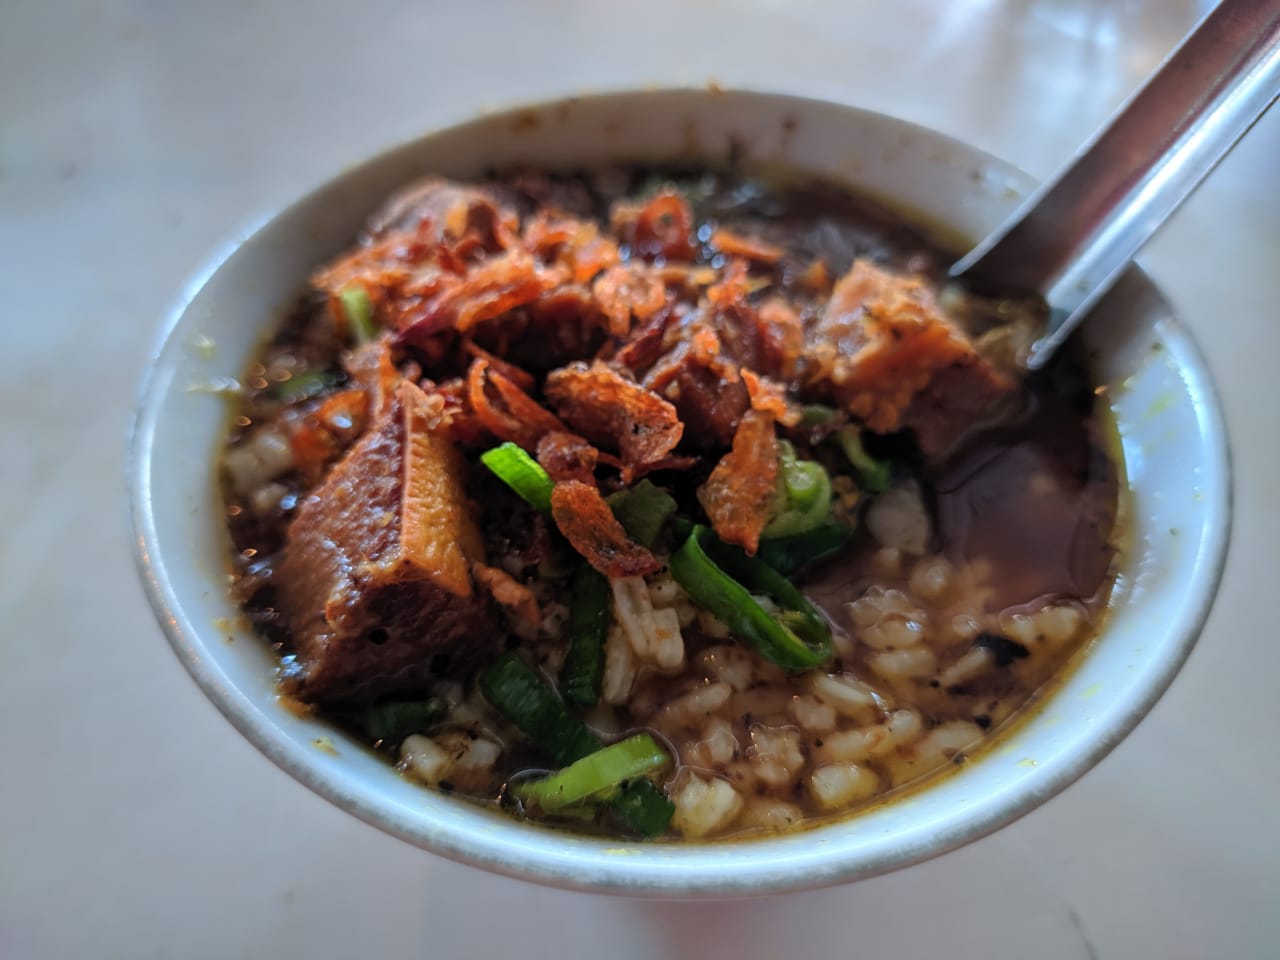 Nasi Grombyang olahan daging sapi atau kerbau berbentuk sup makanan dan kuliner khas Pemalang